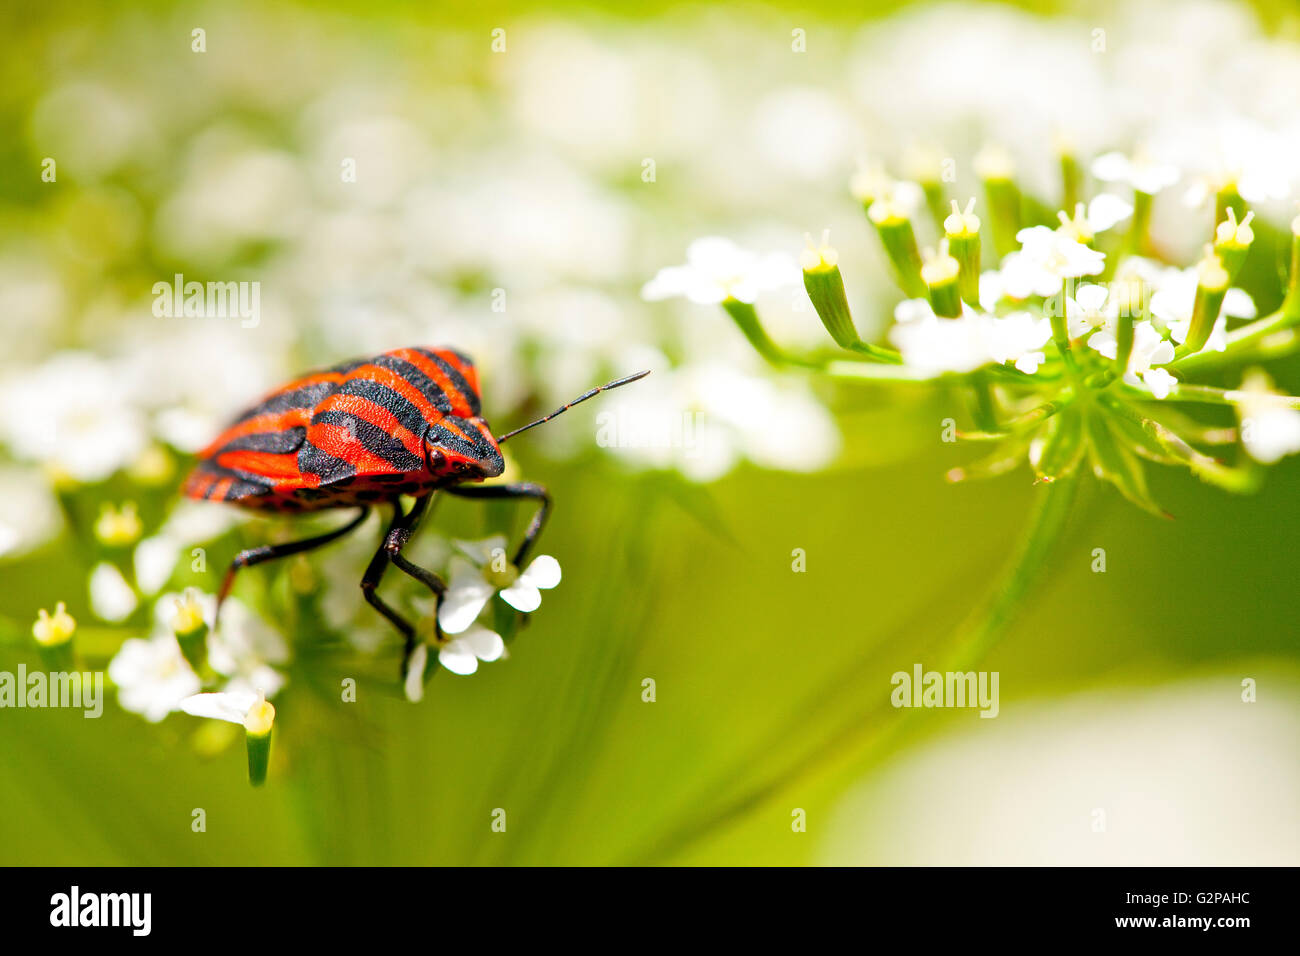 Graphosoma Lineatum auch bekannt als die italienischen Striped-Bug und Minnesänger Bug. Stockfoto